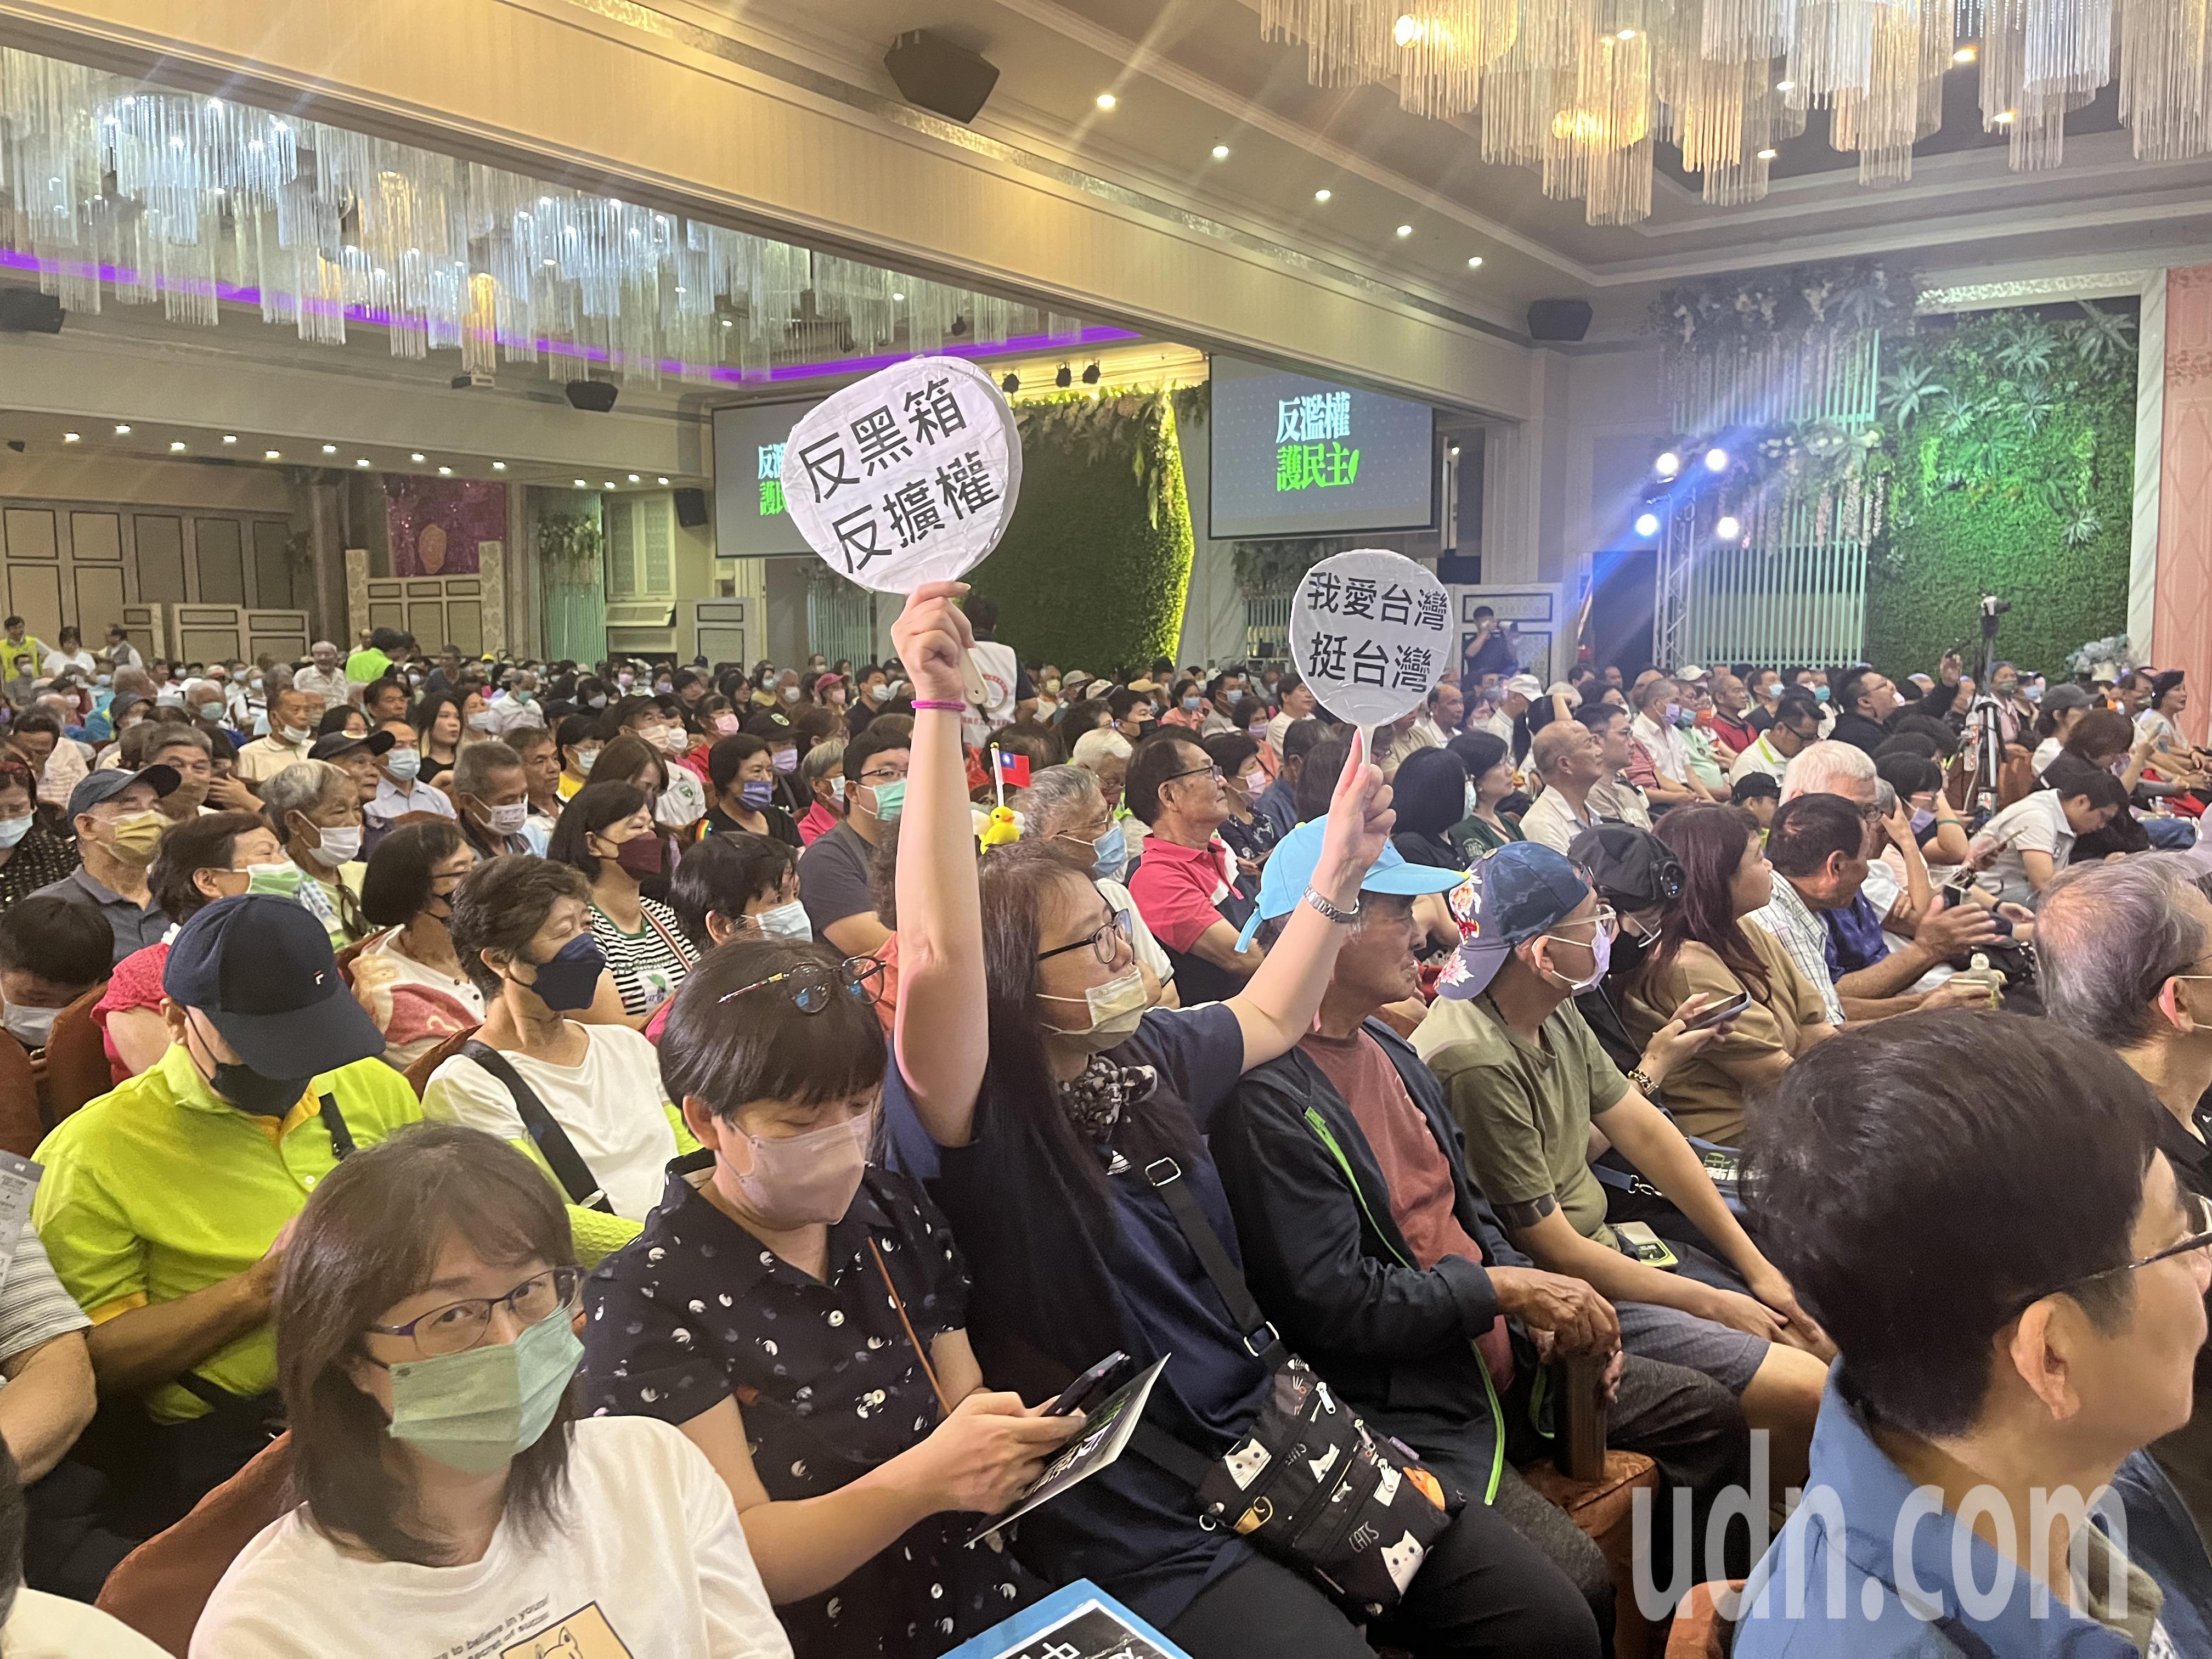 民进党桃园市党部今早中坜举办「反扩权」说明会，现场聚集超过7百人响应。记者陈俊智／摄影